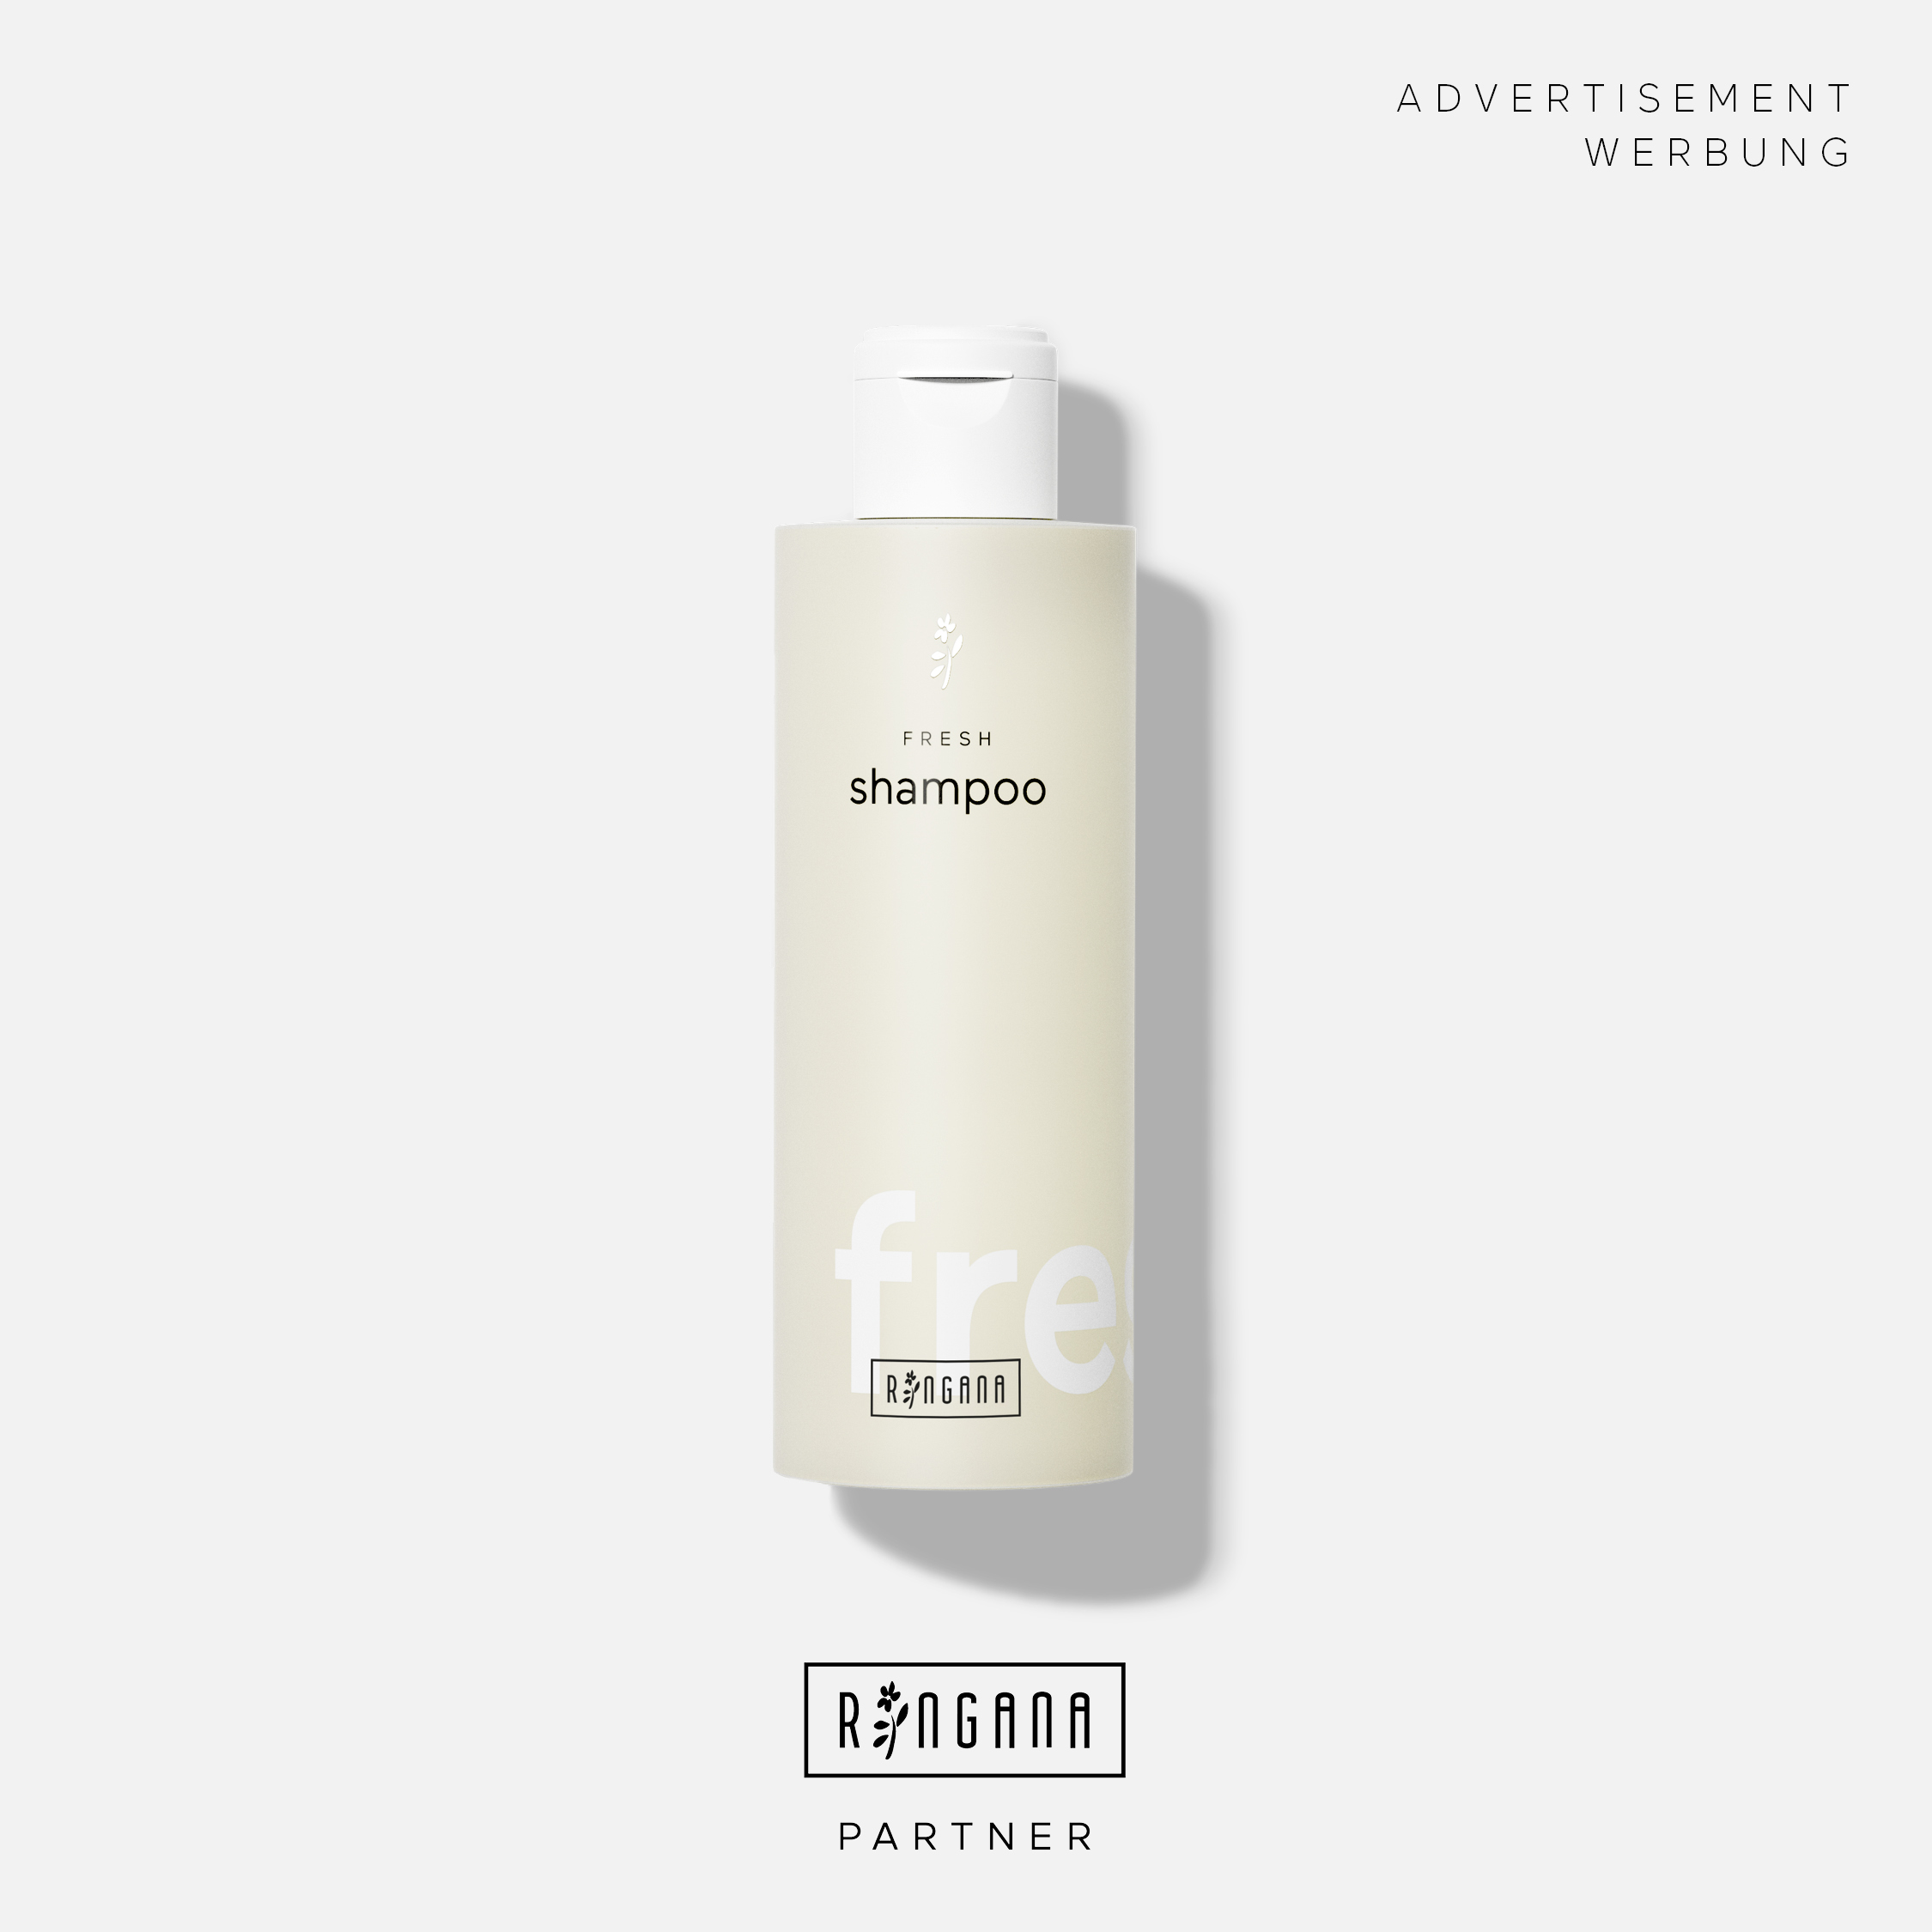 FRESH shampoo MIKROBIOM-FREUNDLICHE HAARPFLEGE  € 20,60